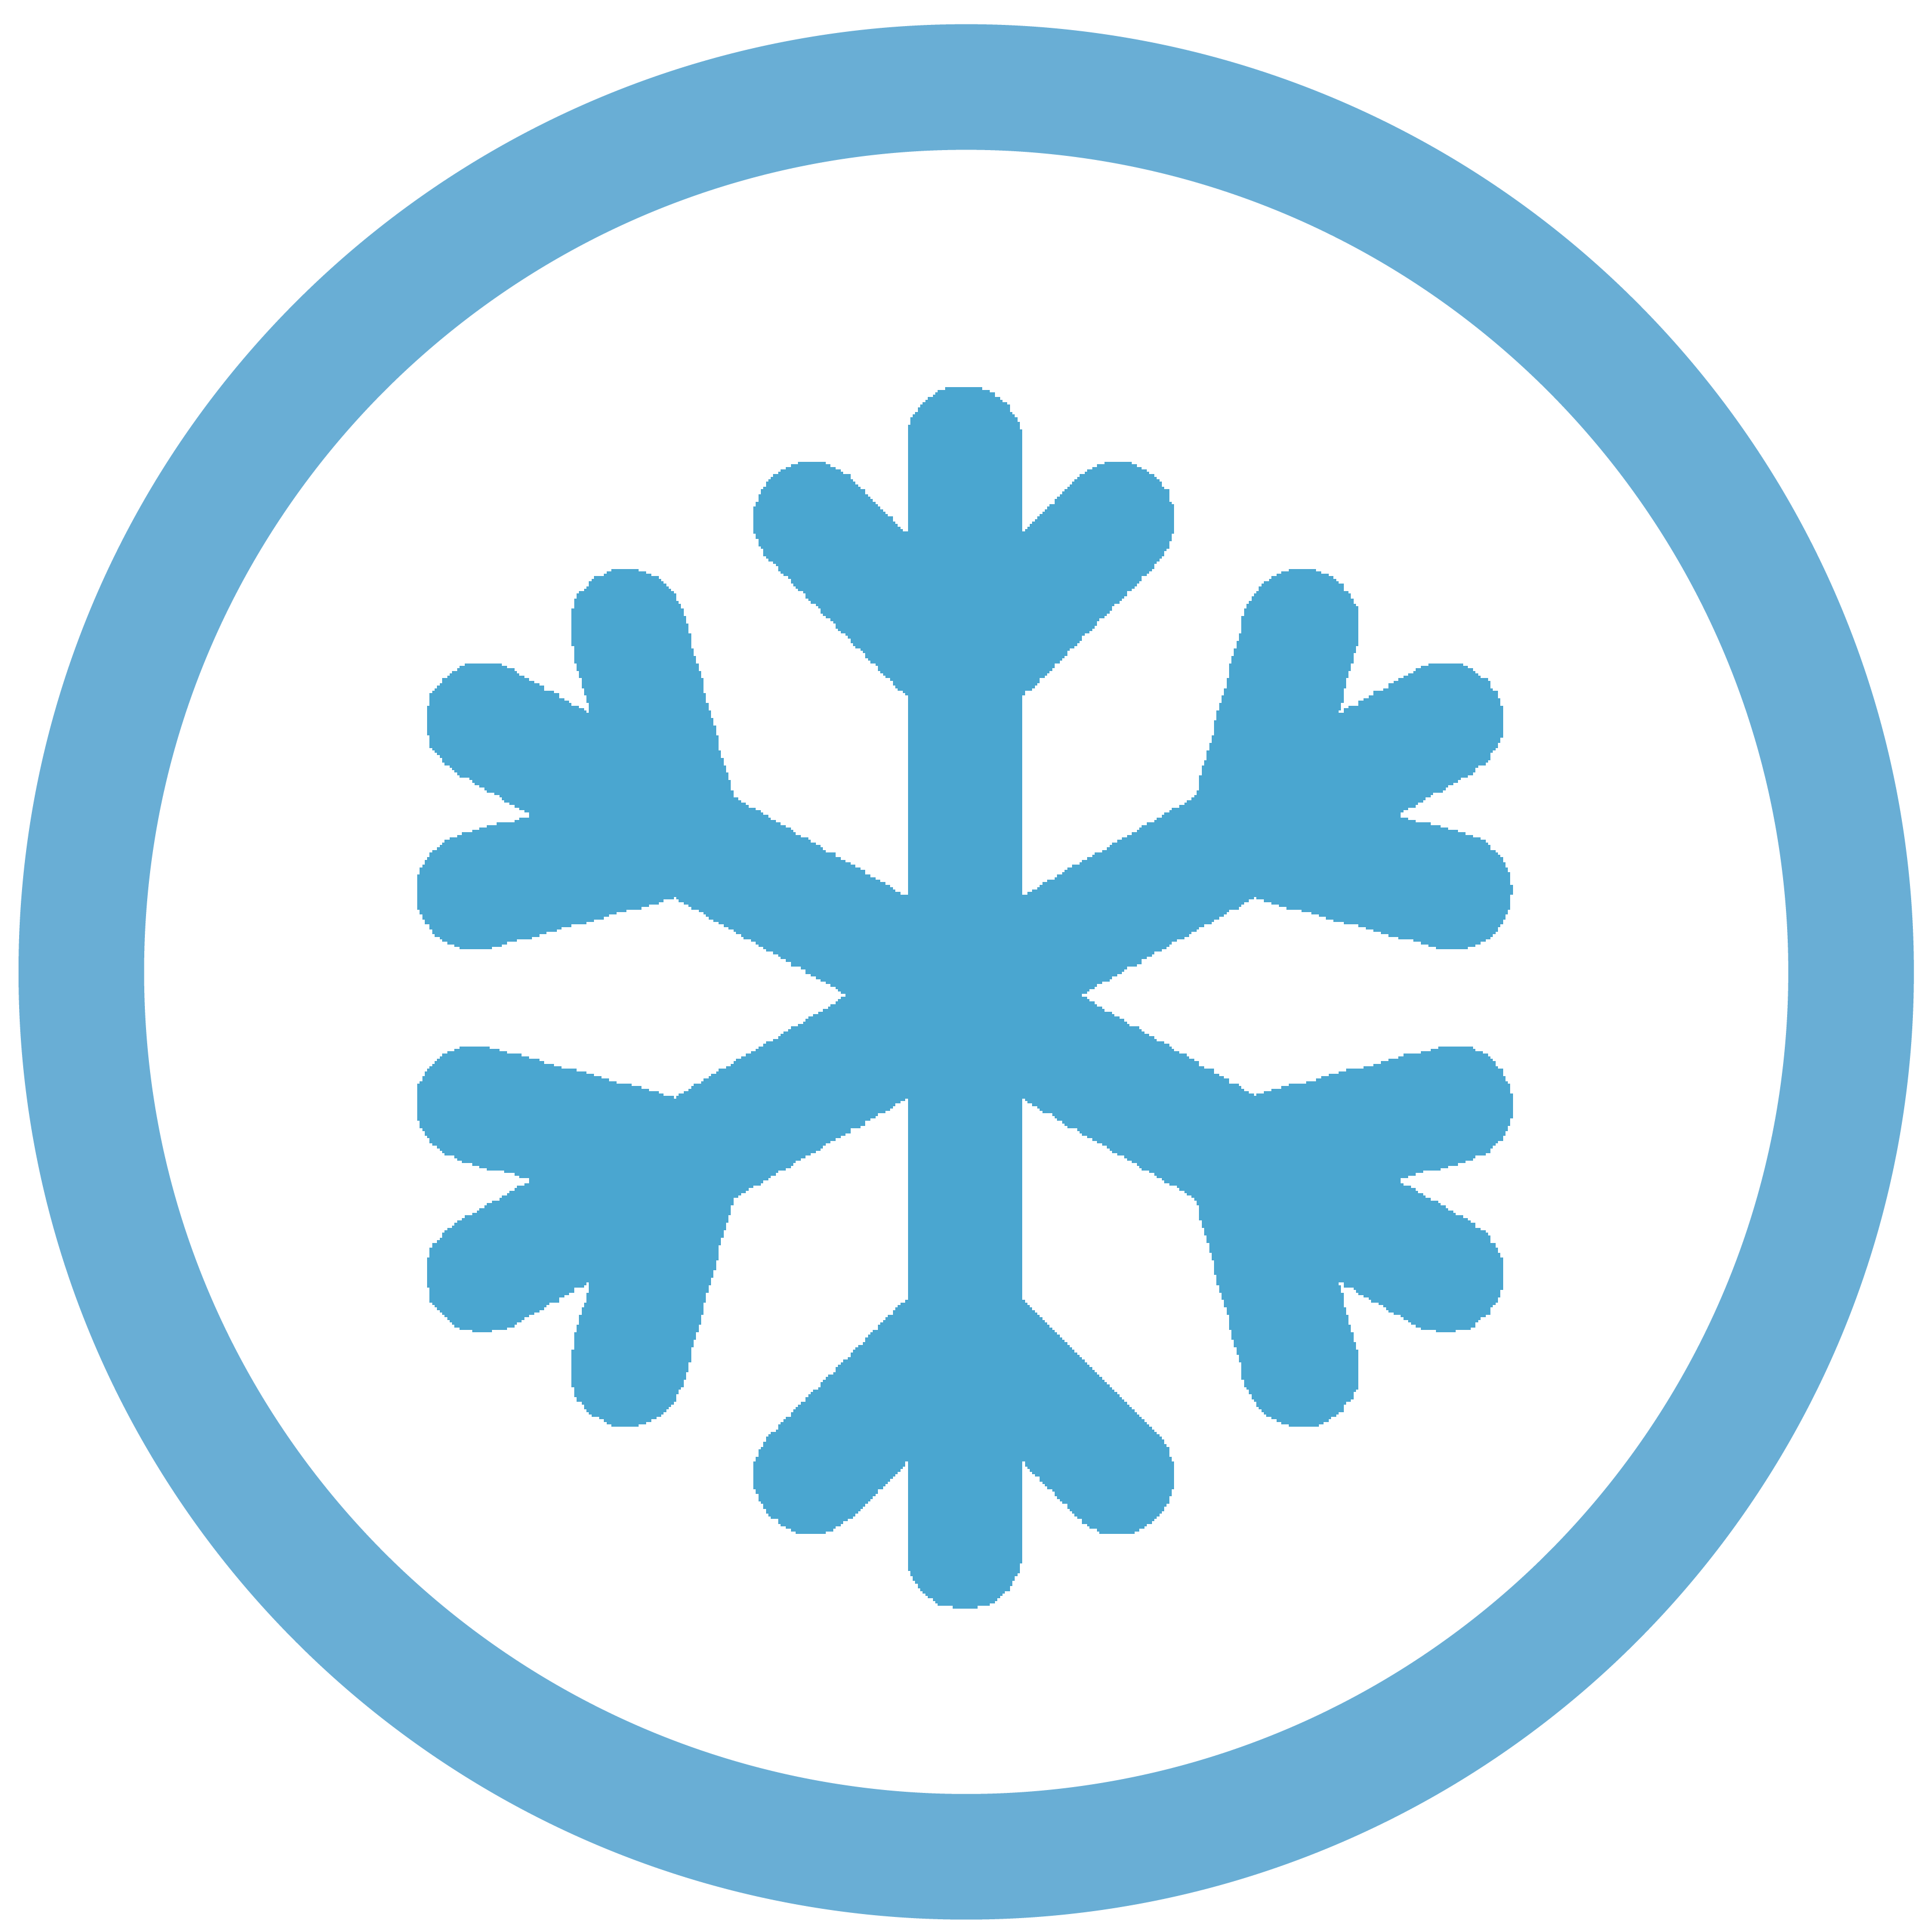 snow flake icon